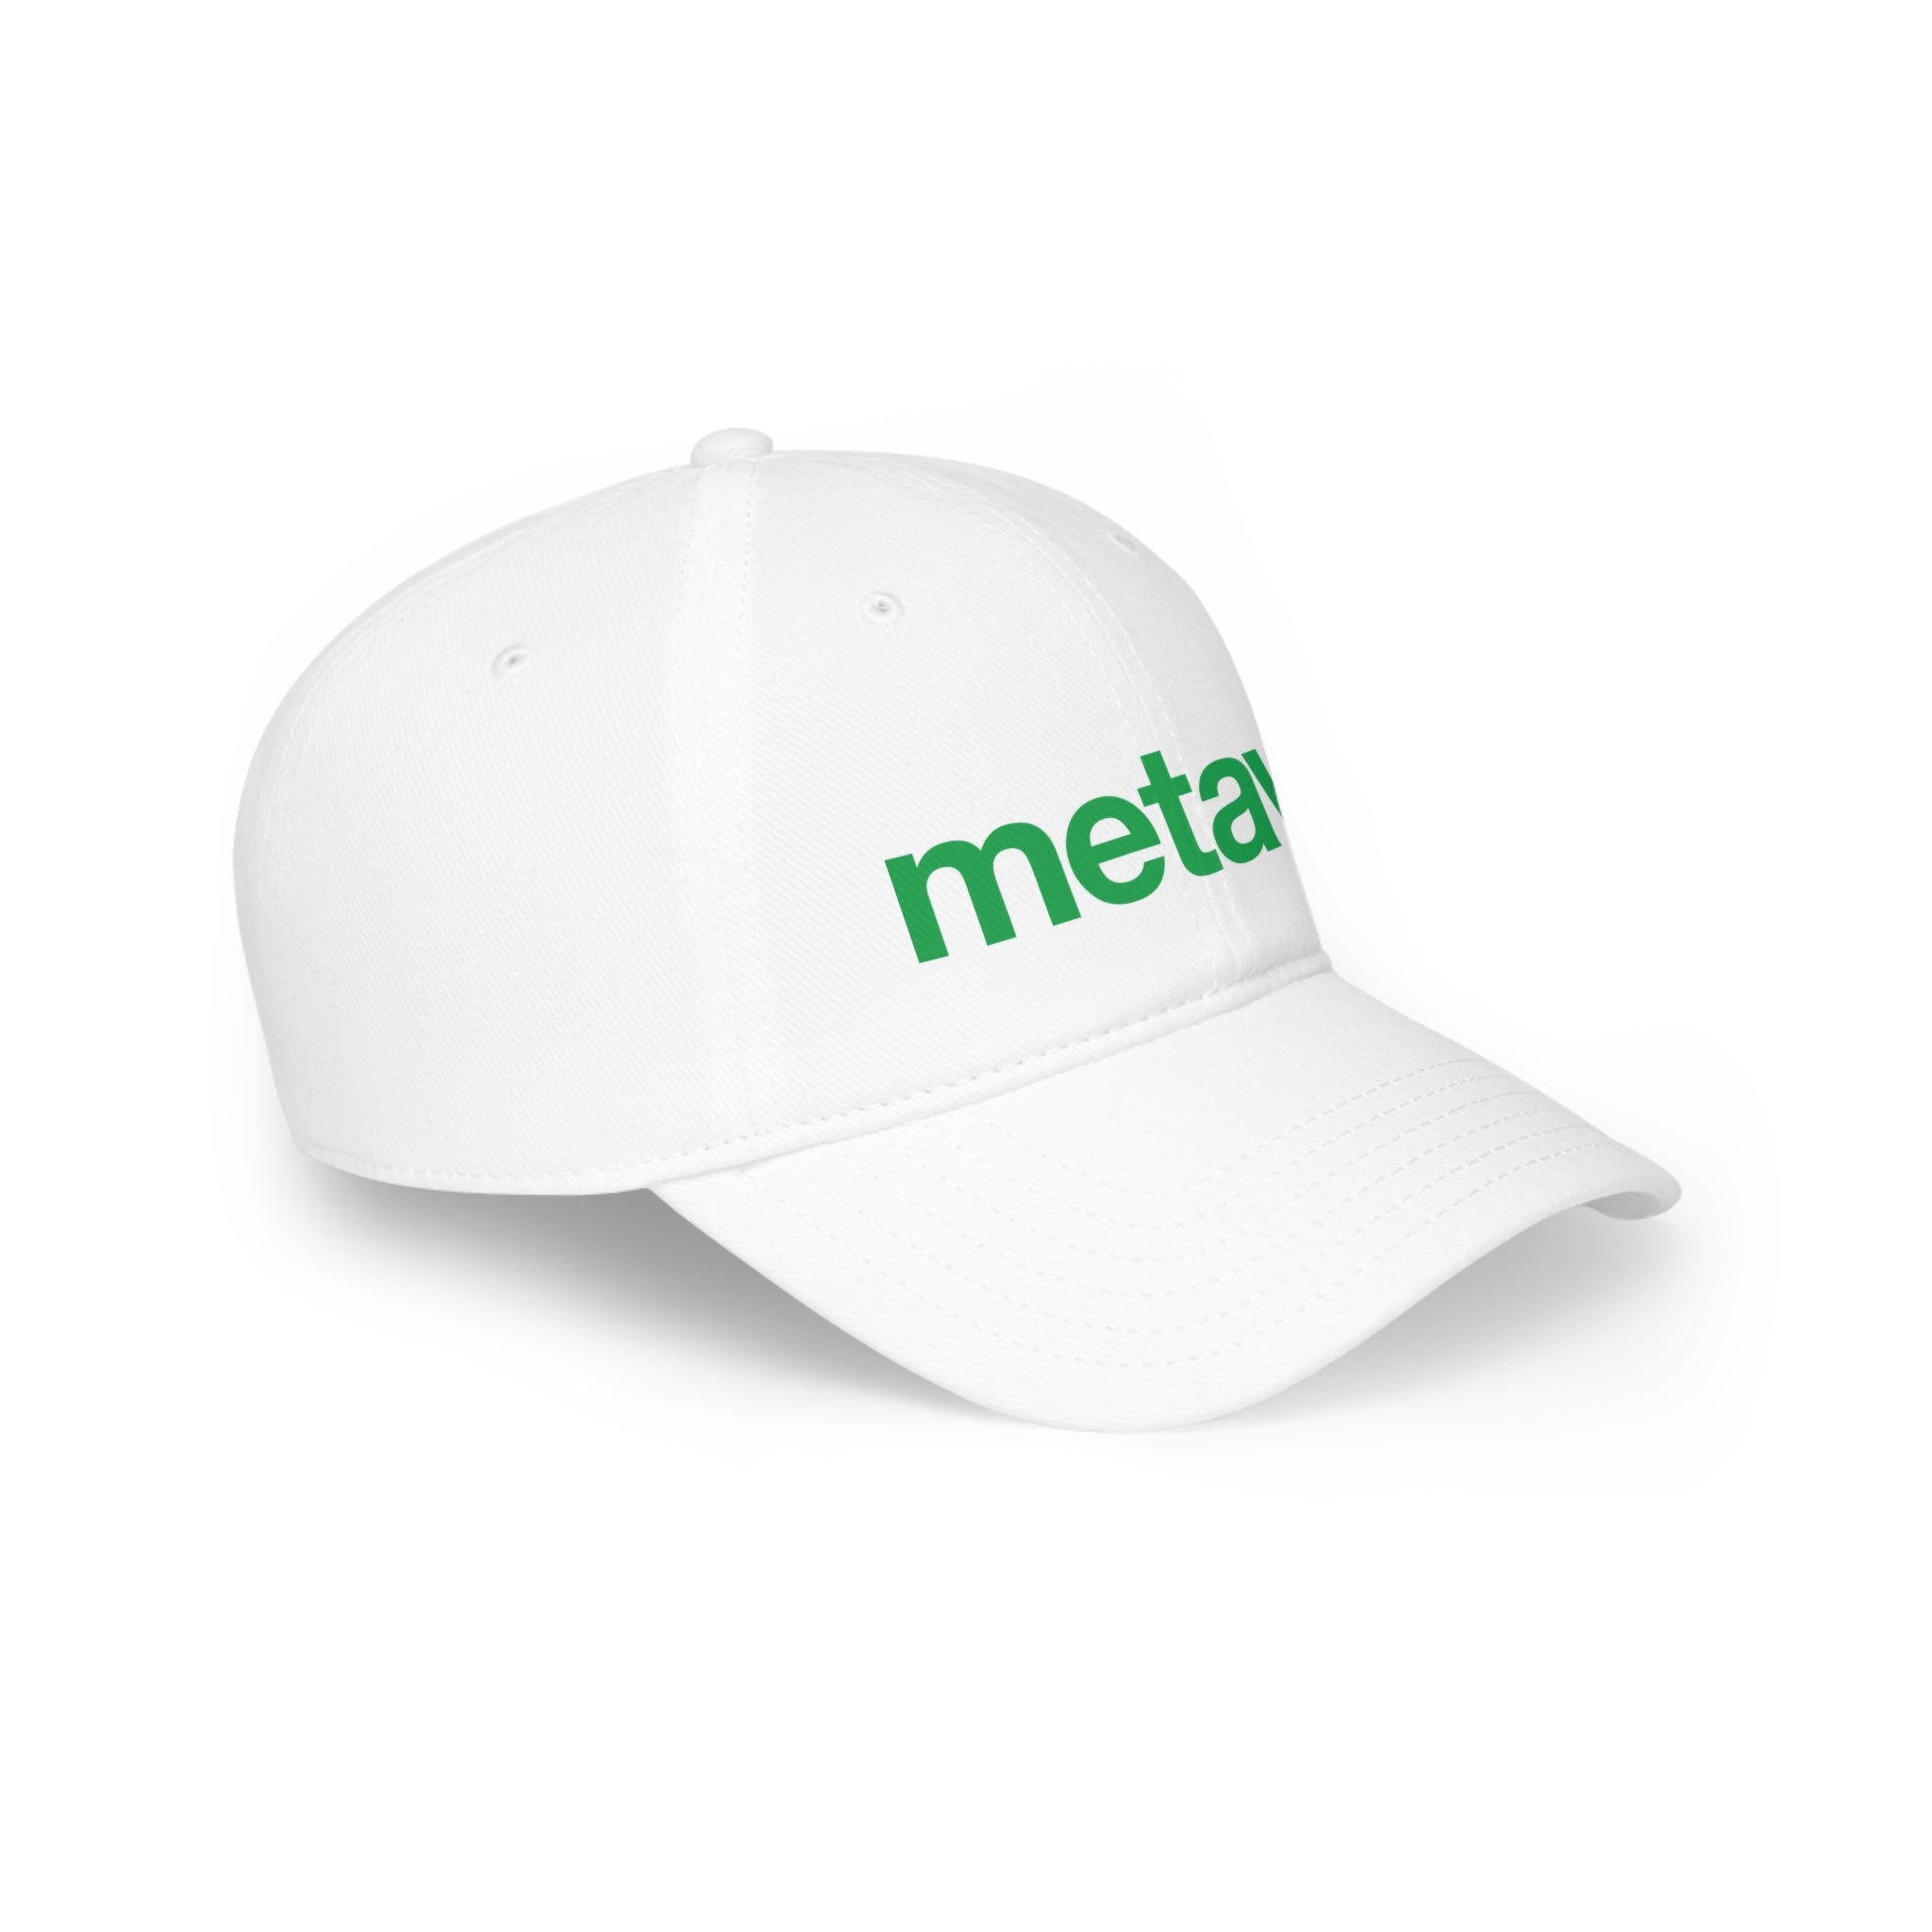 Printify Hats White / One size Low Profile Baseball Cap